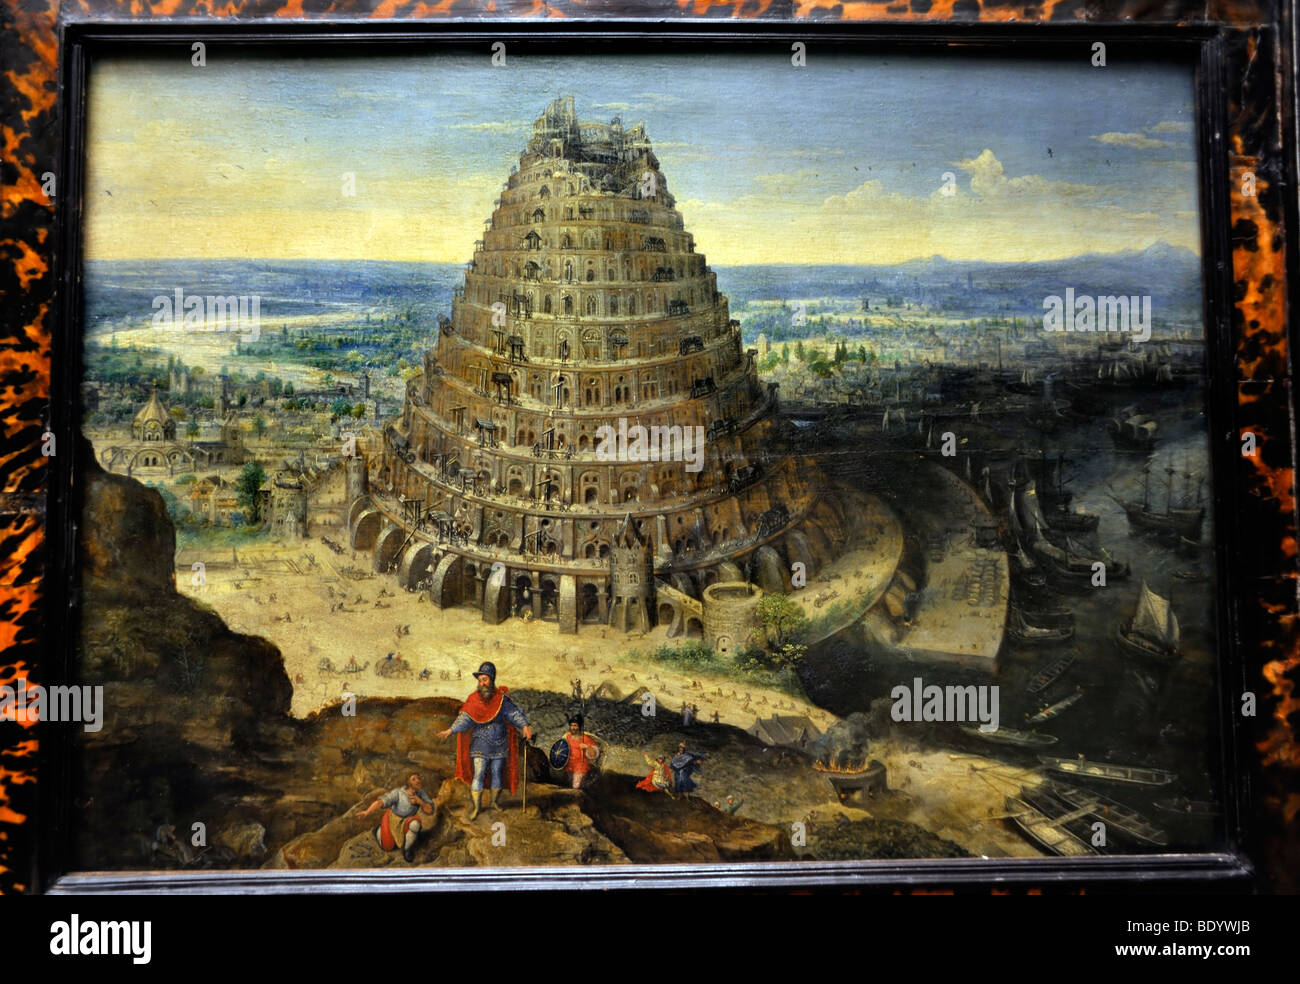 Paris, Frankreich - bildende Kunst, aus dem 16. Jahrhundert holländische Malerei auf dem Display im "Louvre", "The Tower Of Babel" Stockfoto